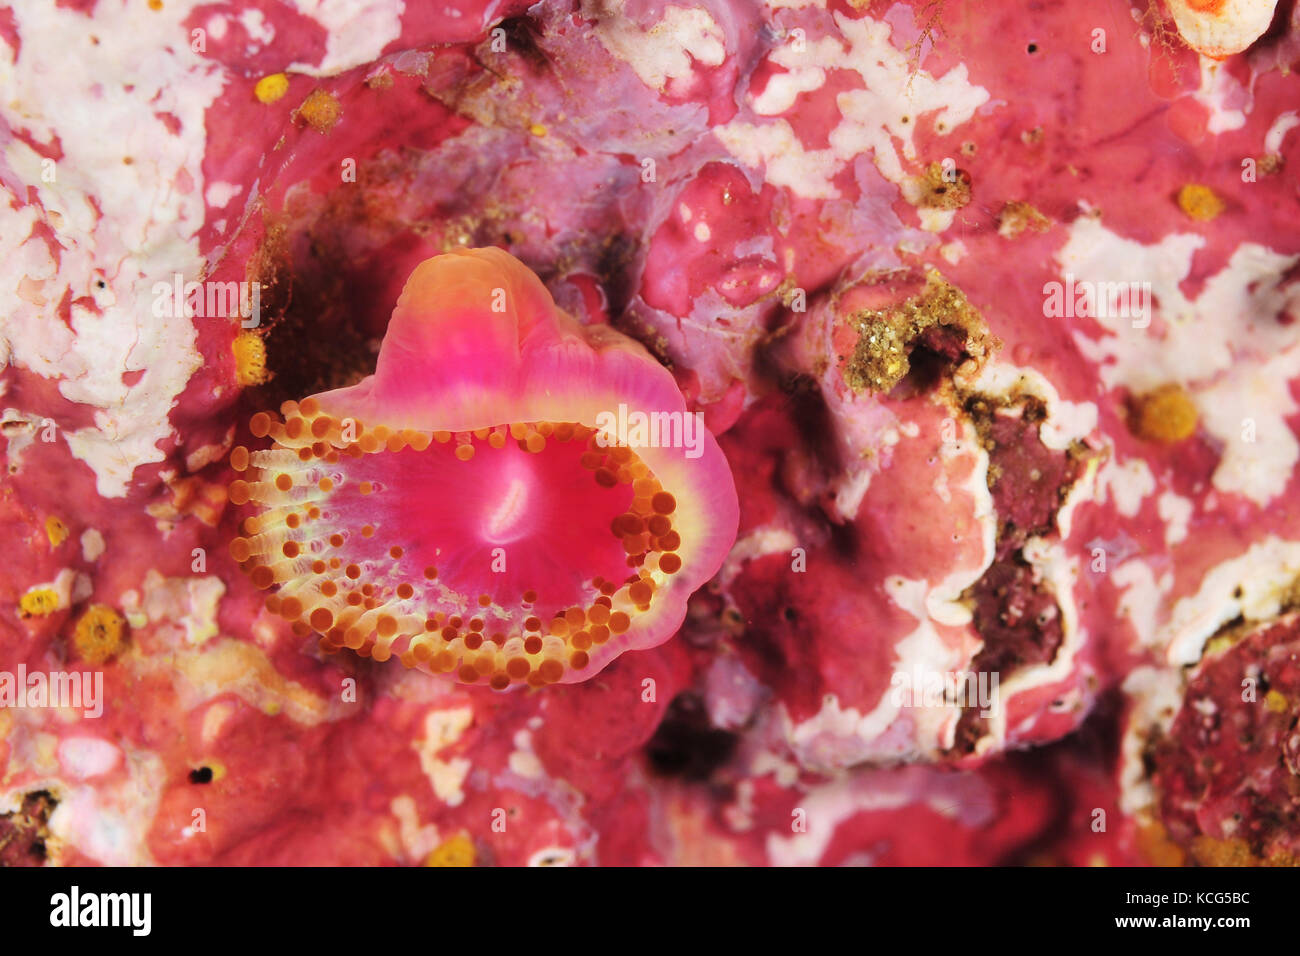 Solo anémona joya corynactis australis en Roca Rosa cubiertos de algas coralinas. Foto de stock